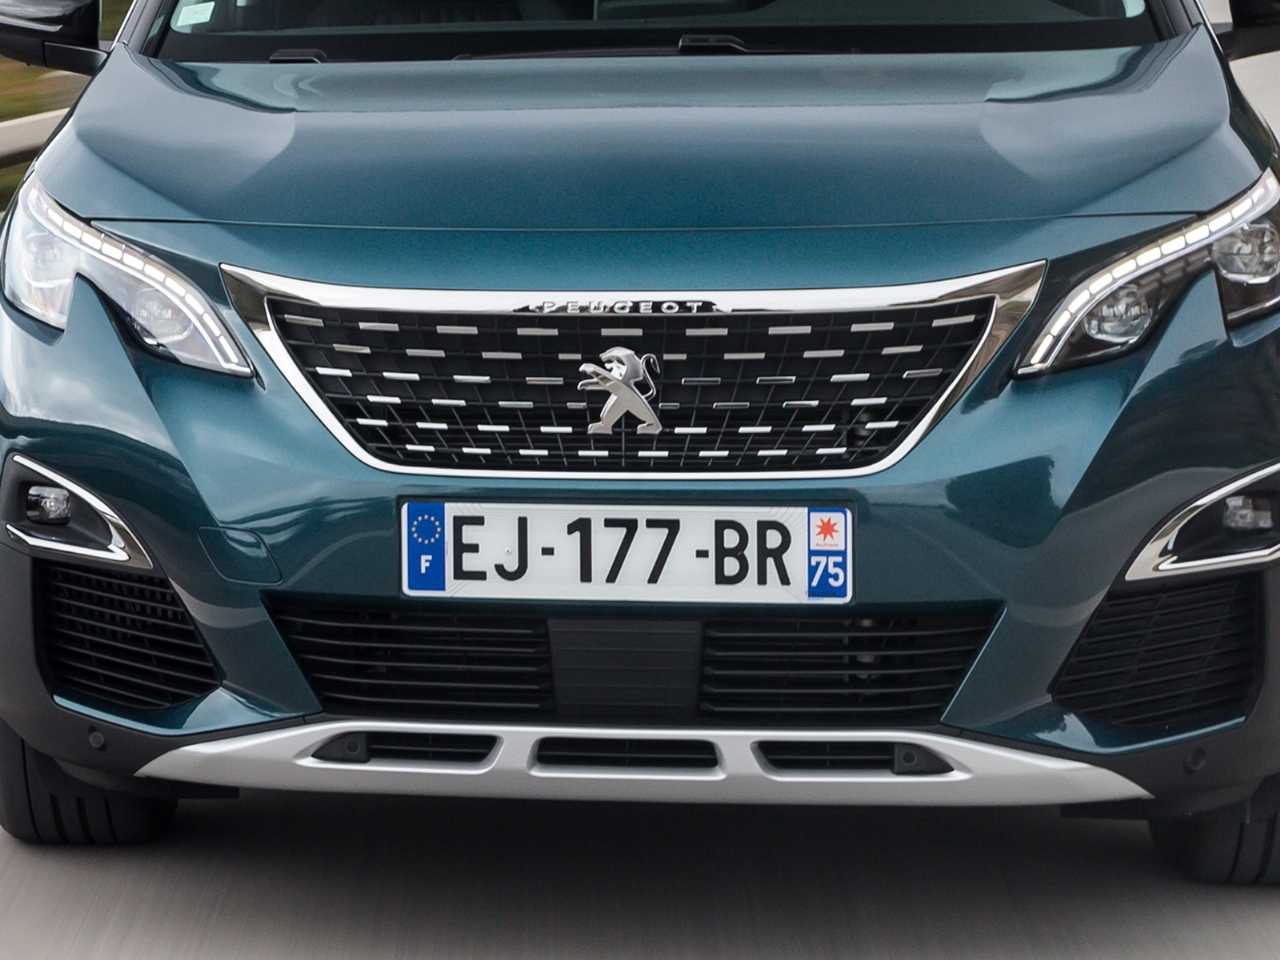 Dianteira do futuro Peugeot 1008 dever remeter aos atuais SUVs da linha